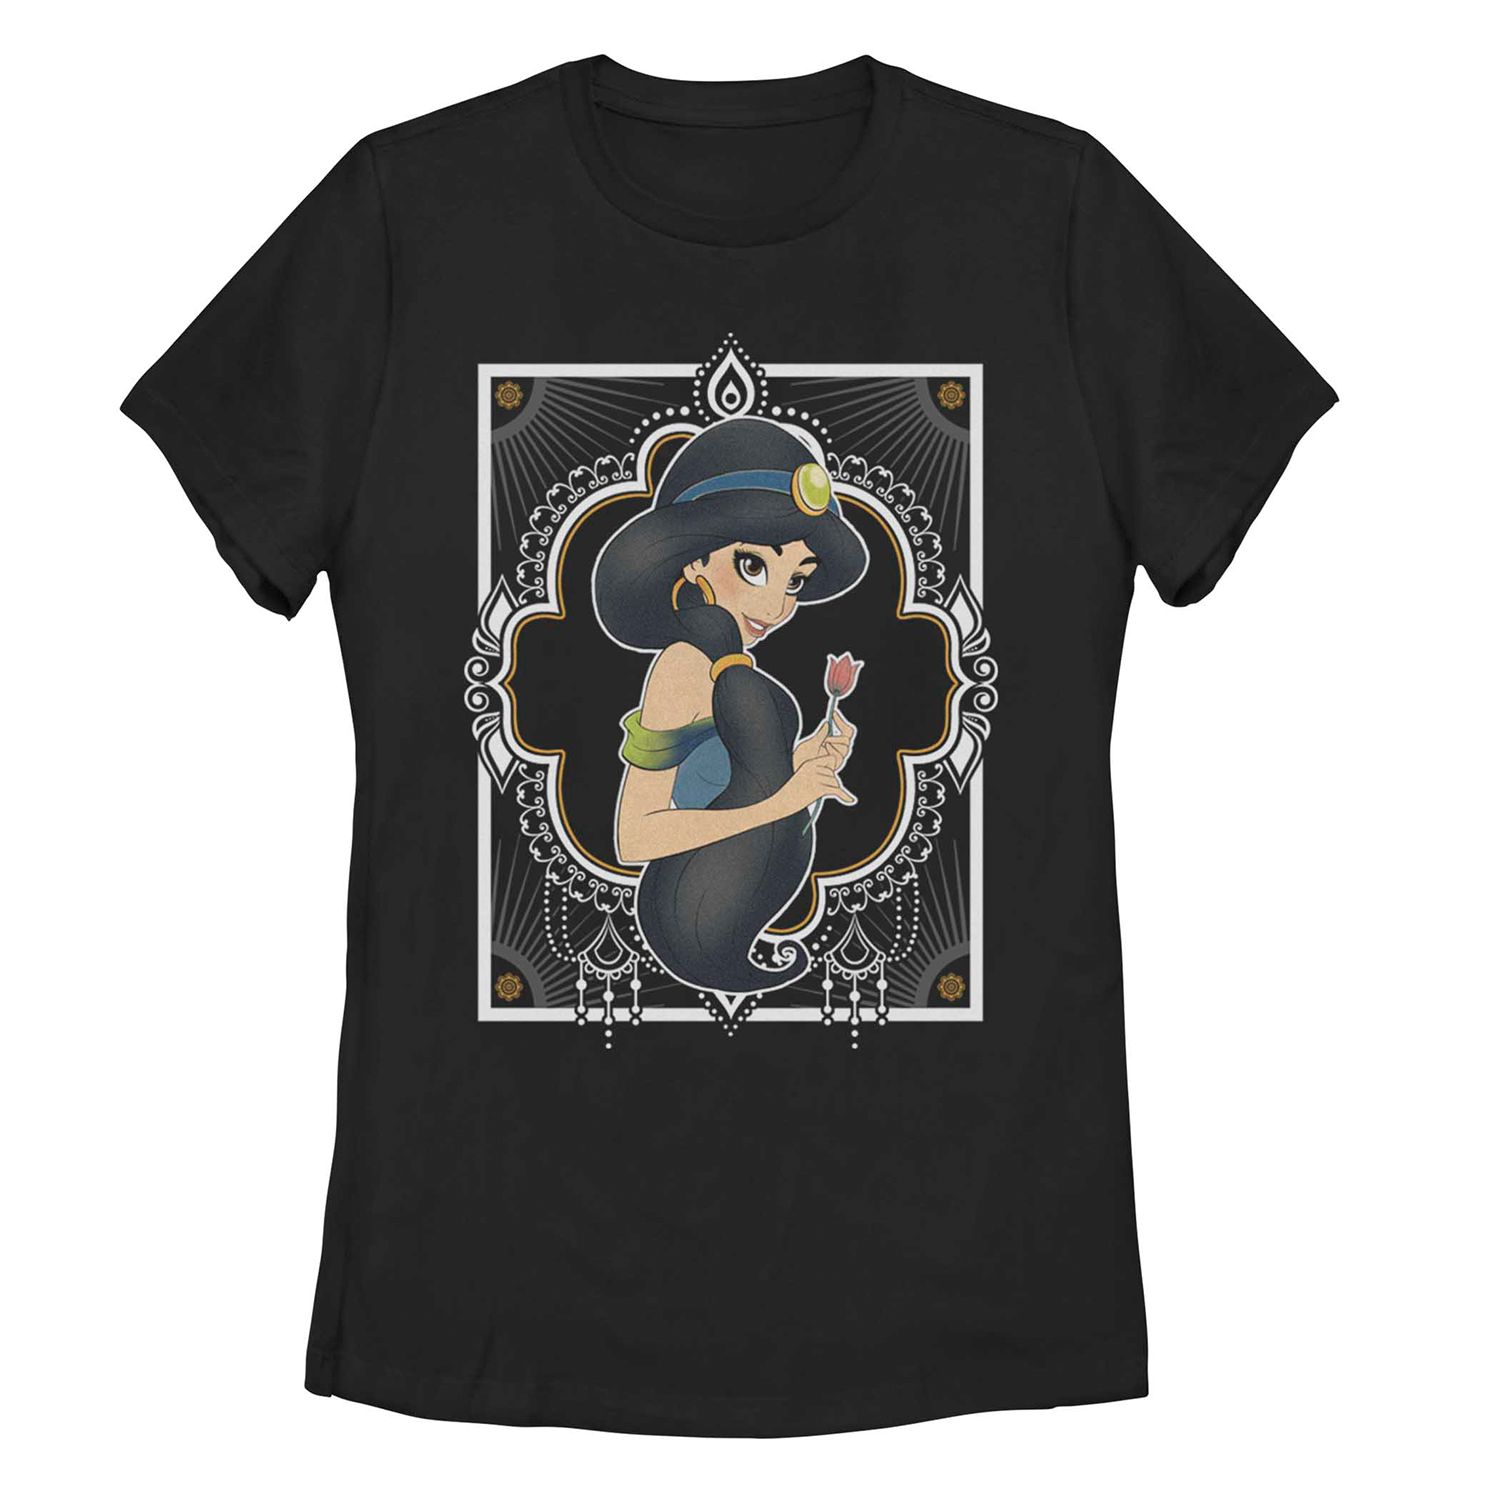 Детская футболка Disney's Aladdin Jasmine с геометрическим рисунком и рамкой Disney